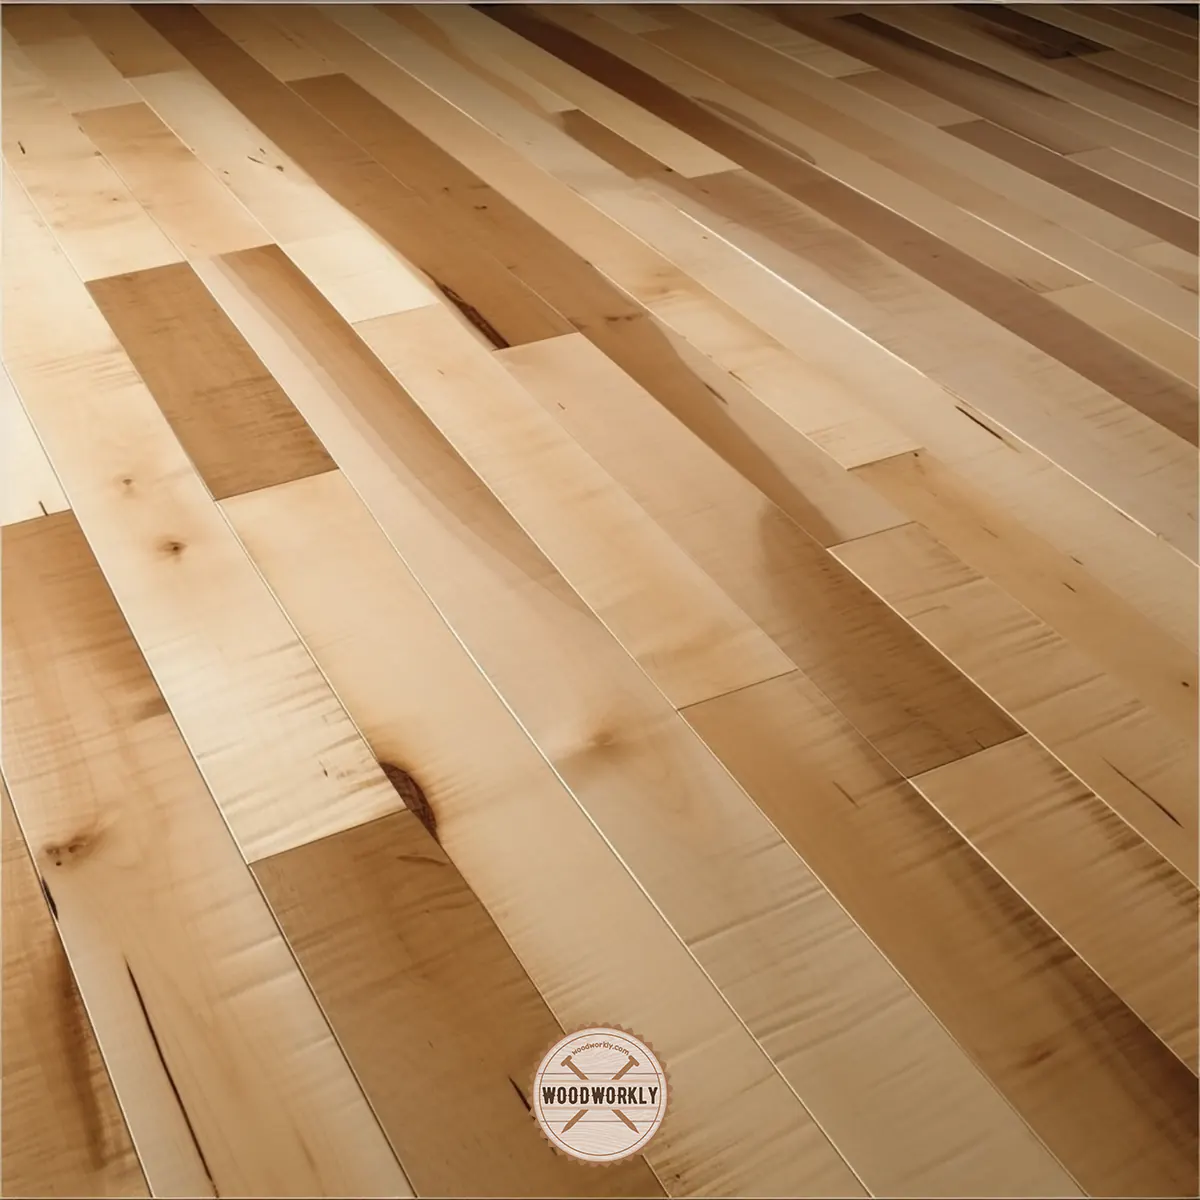 Stained birch flooring